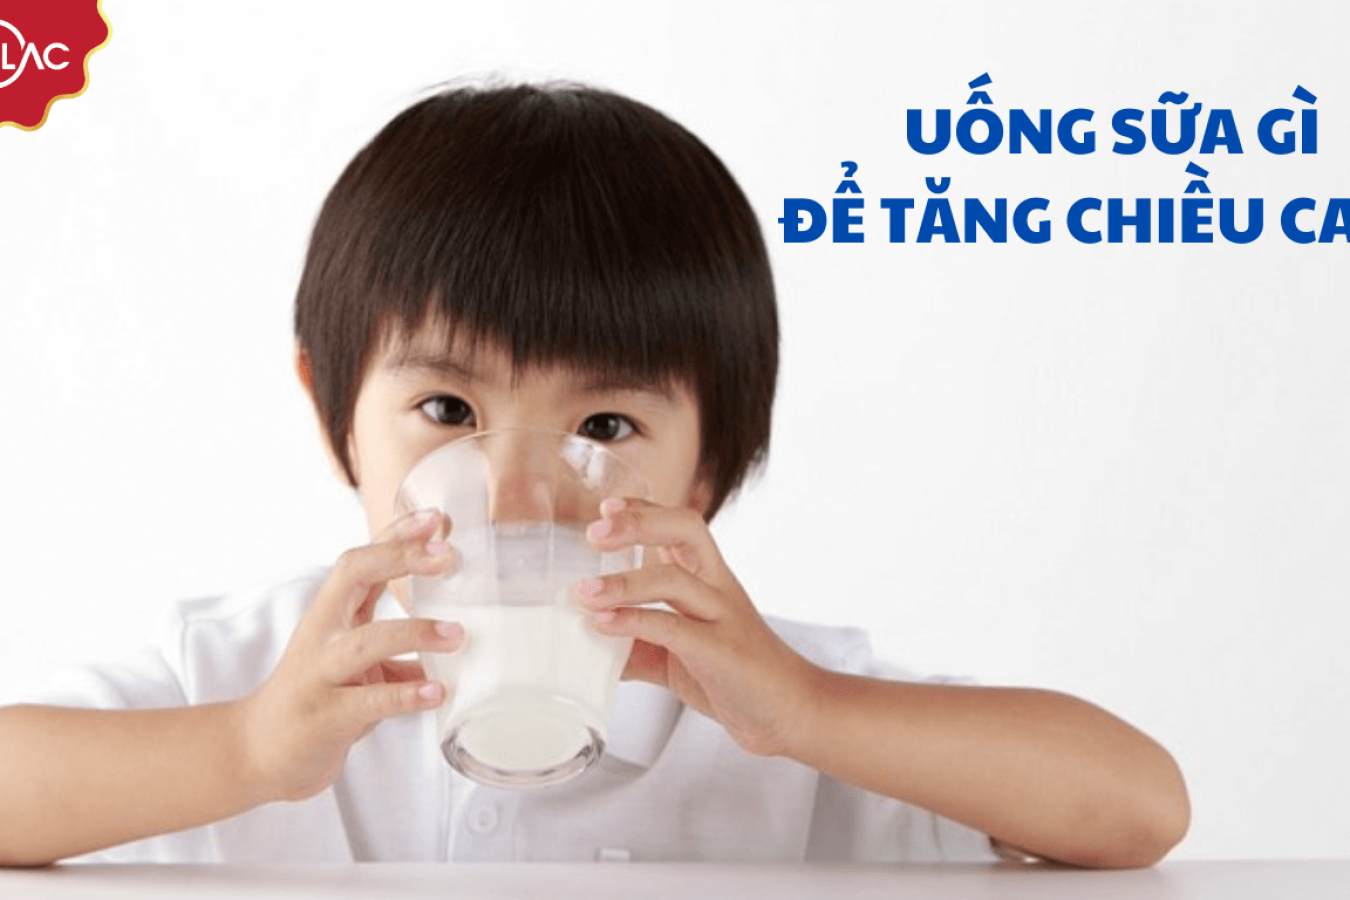 Mẹ cho bé uống sữa gì để tăng chiều cao tốt nhất?